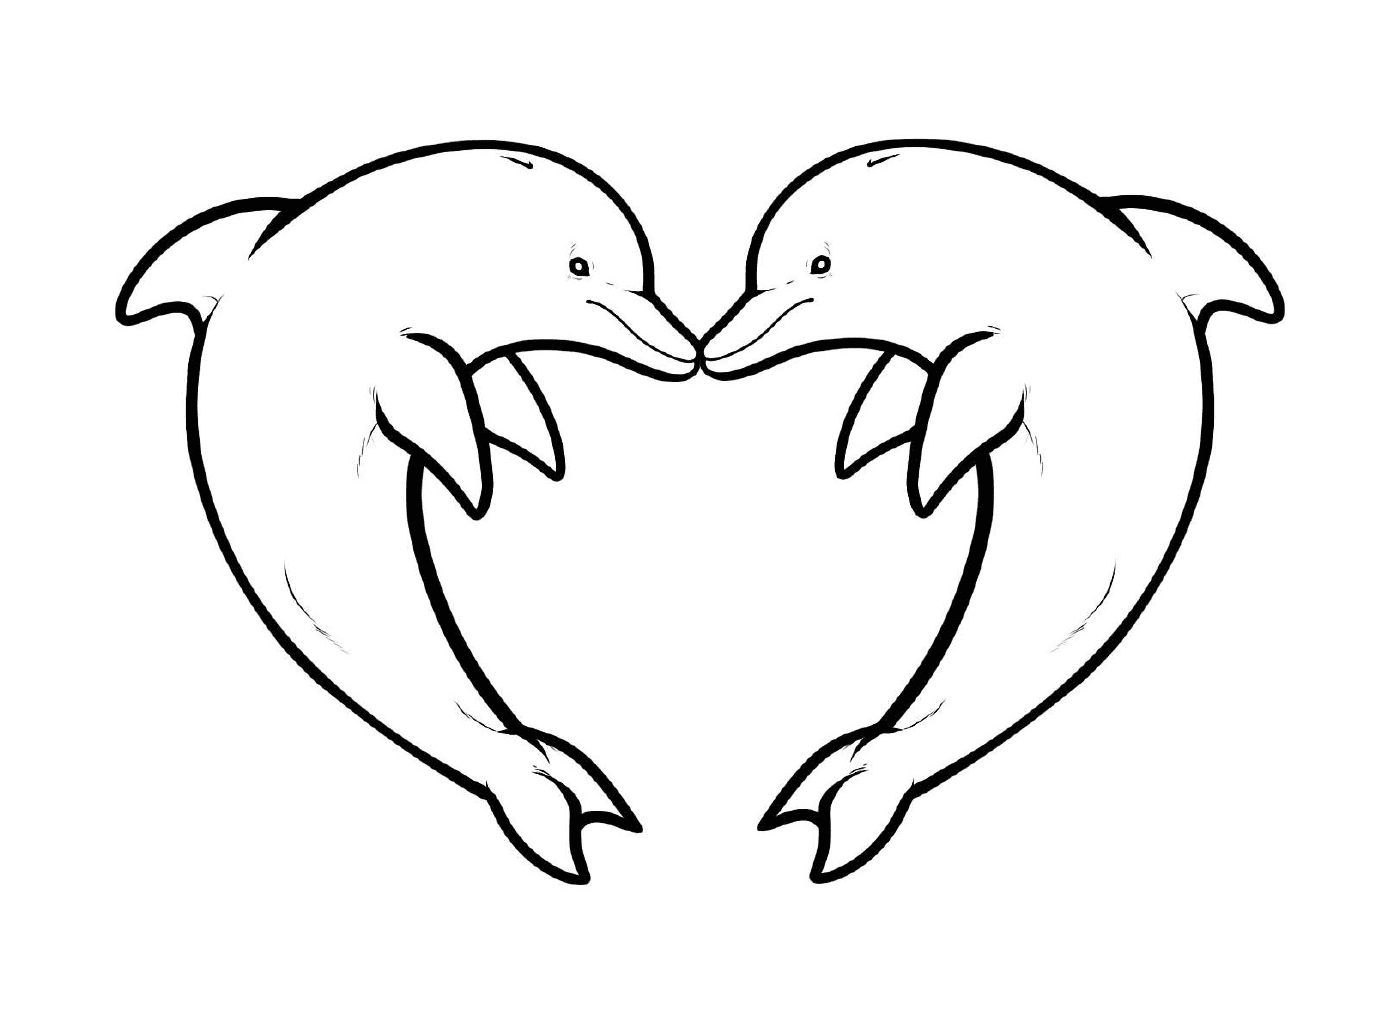   deux dauphins formant la forme d'un cœur 